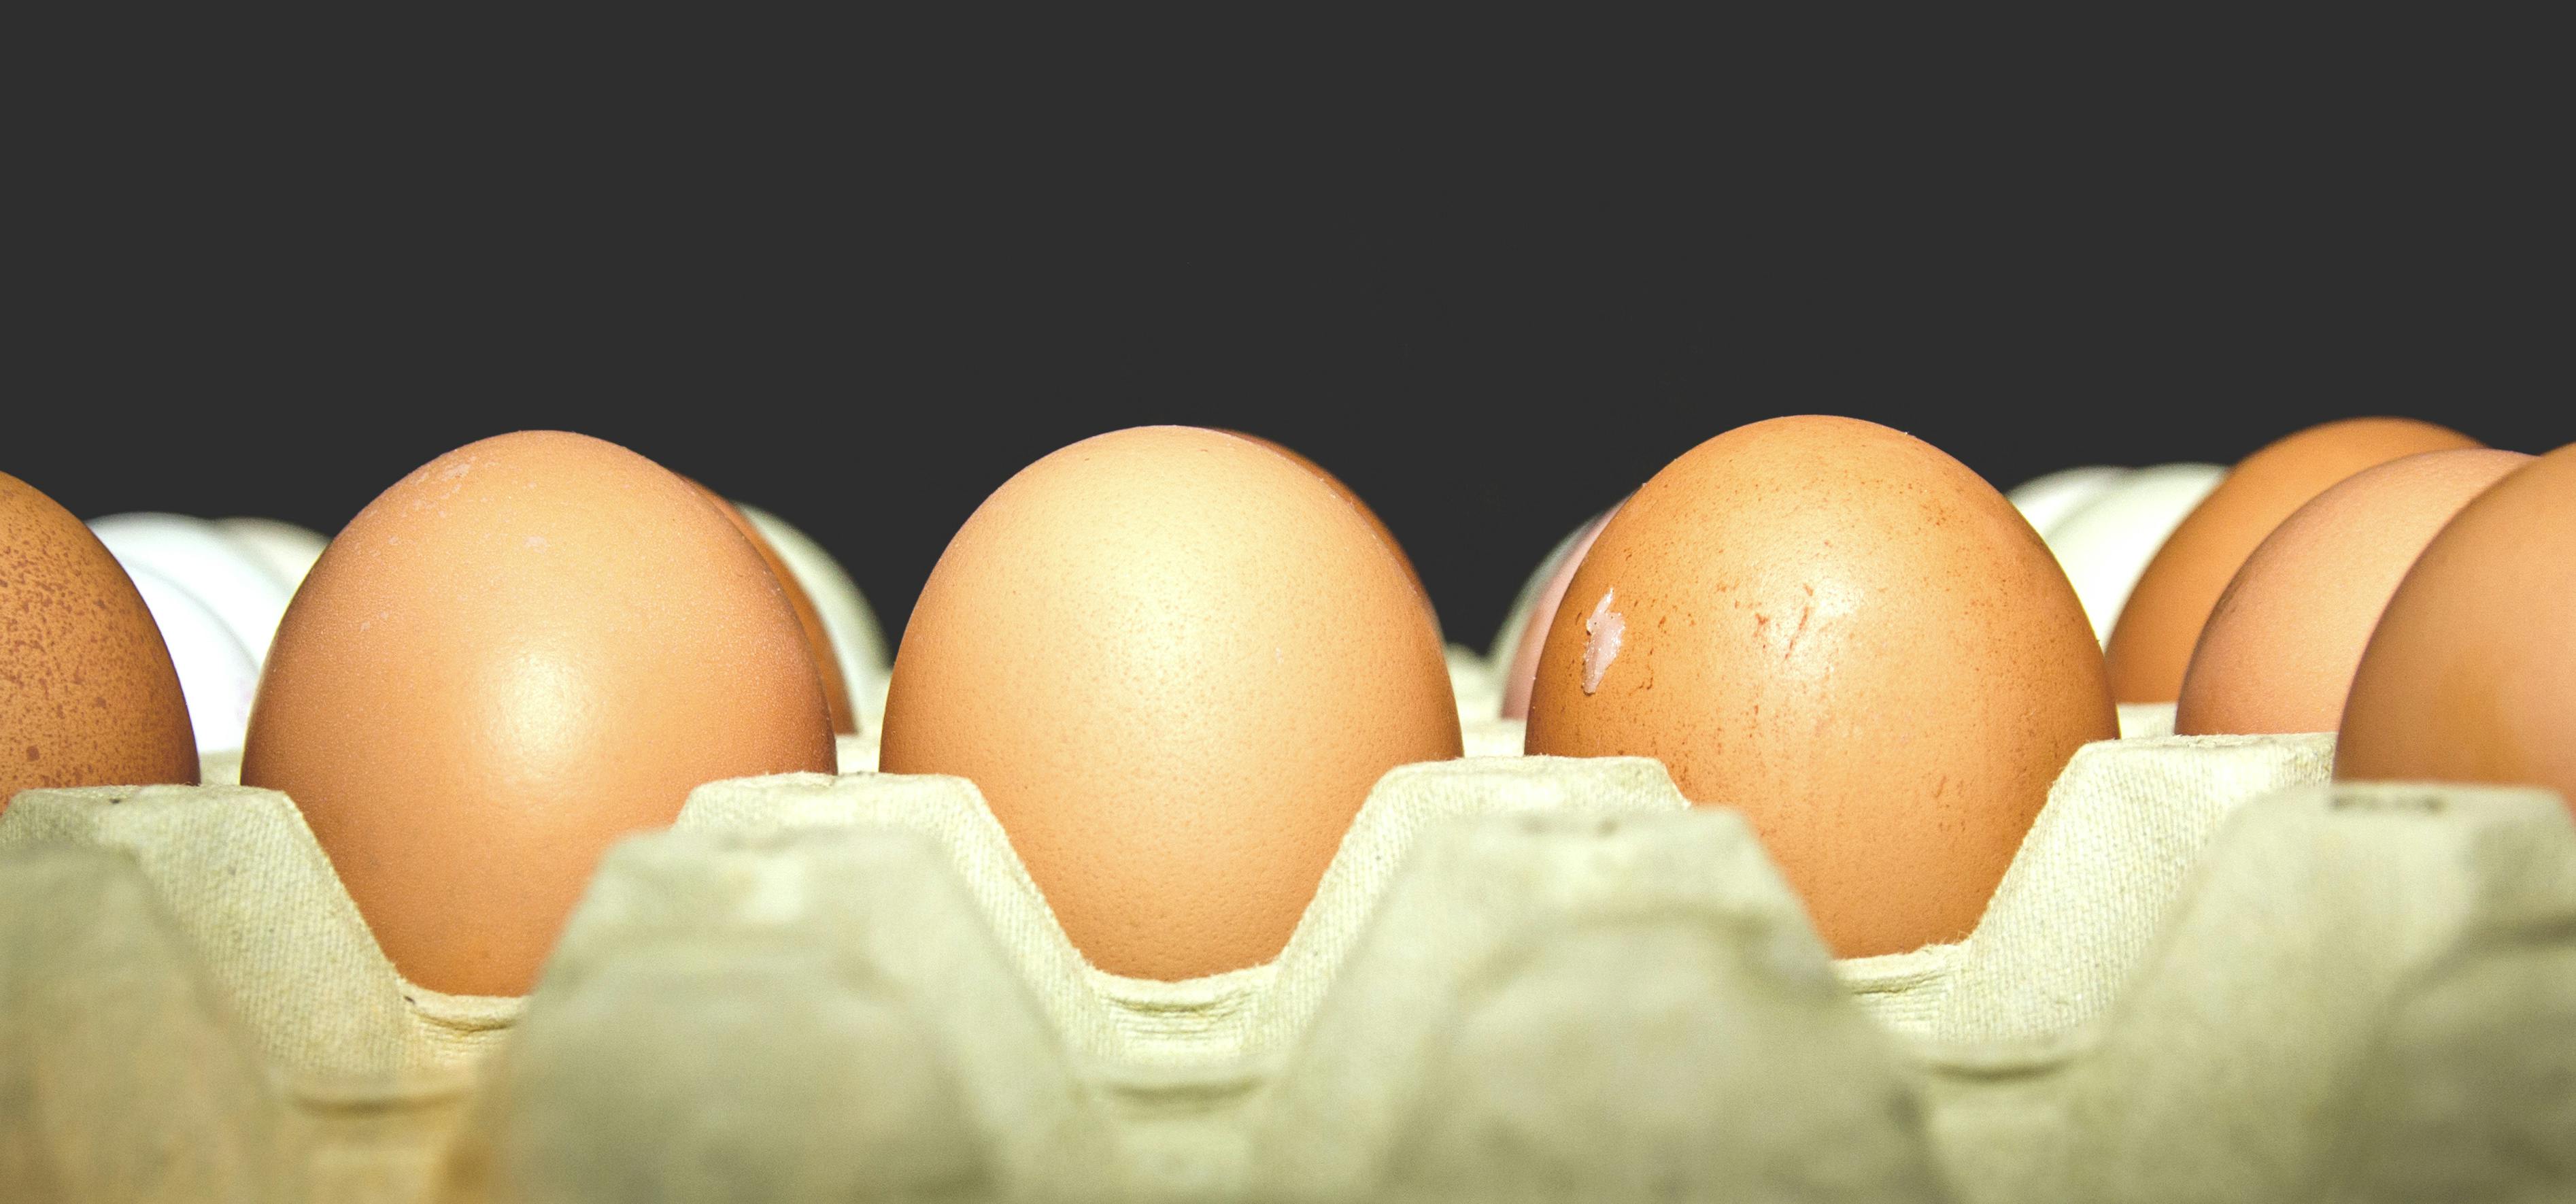 Kostenloses Foto zum Thema: eier, eierschale, haufen